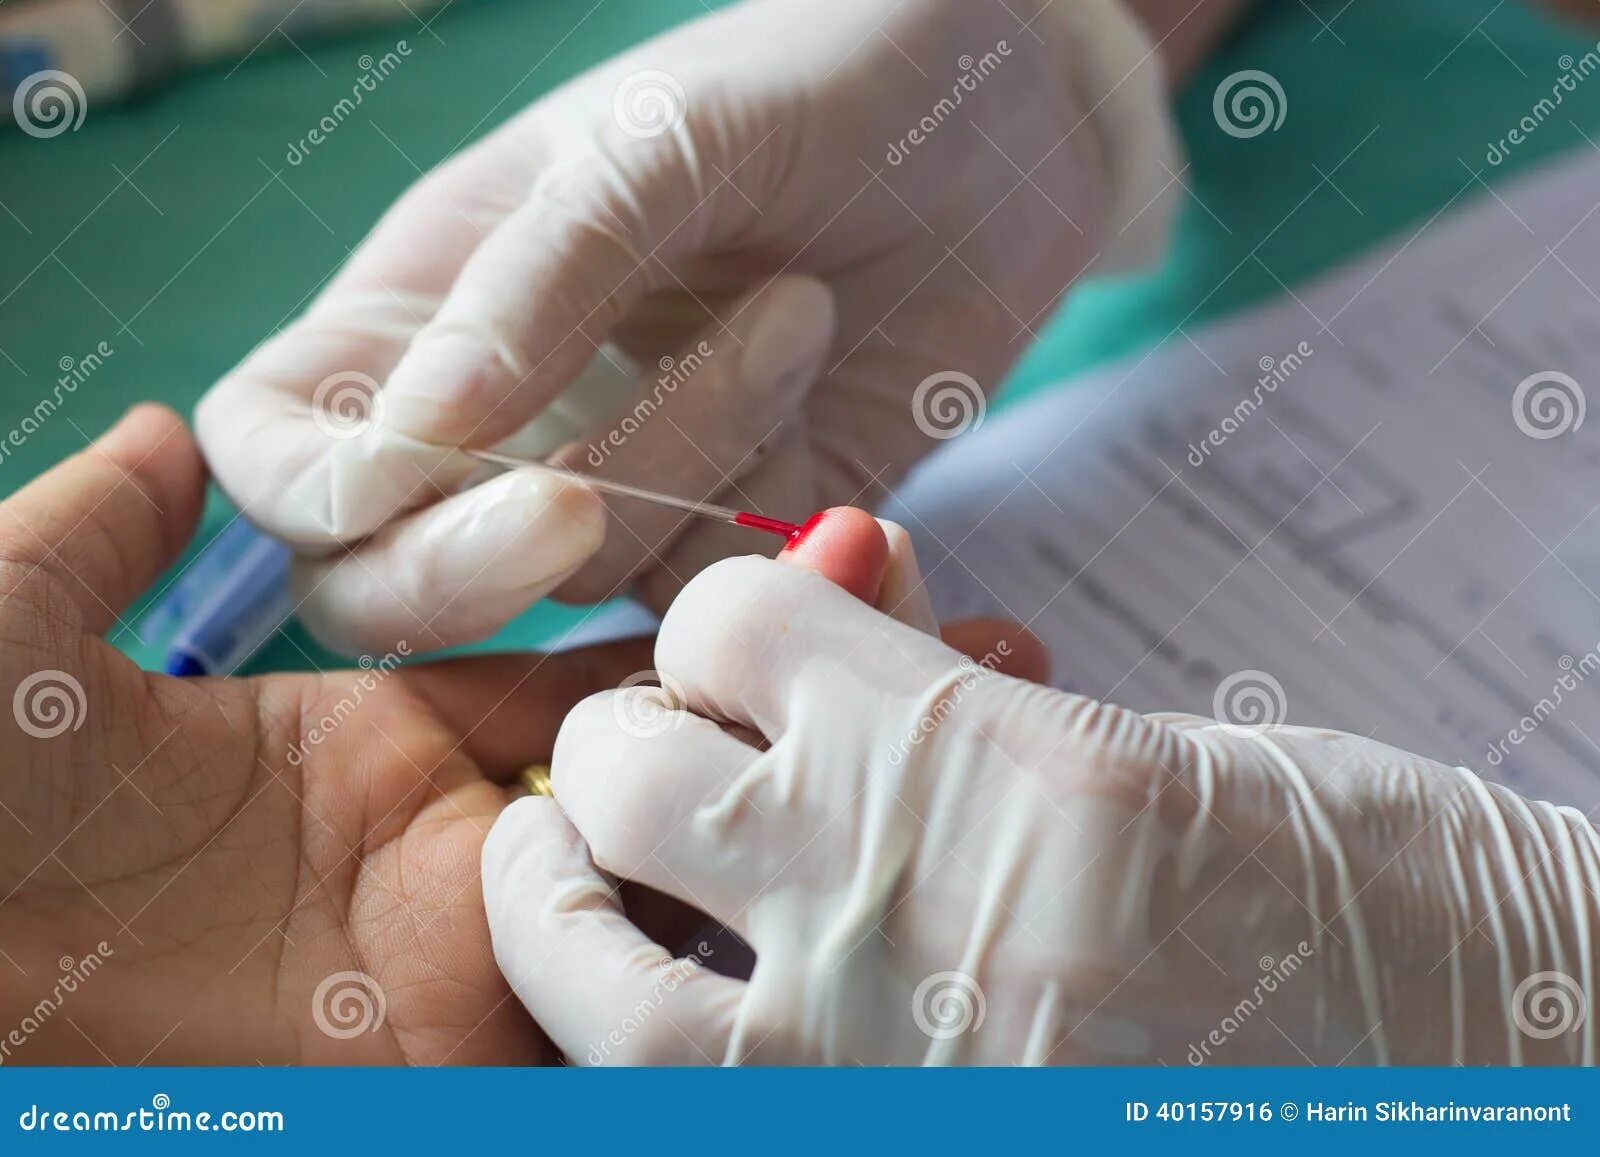 Анализ крови из пальца можно ли есть. Стекло для взятия крови из пальца.